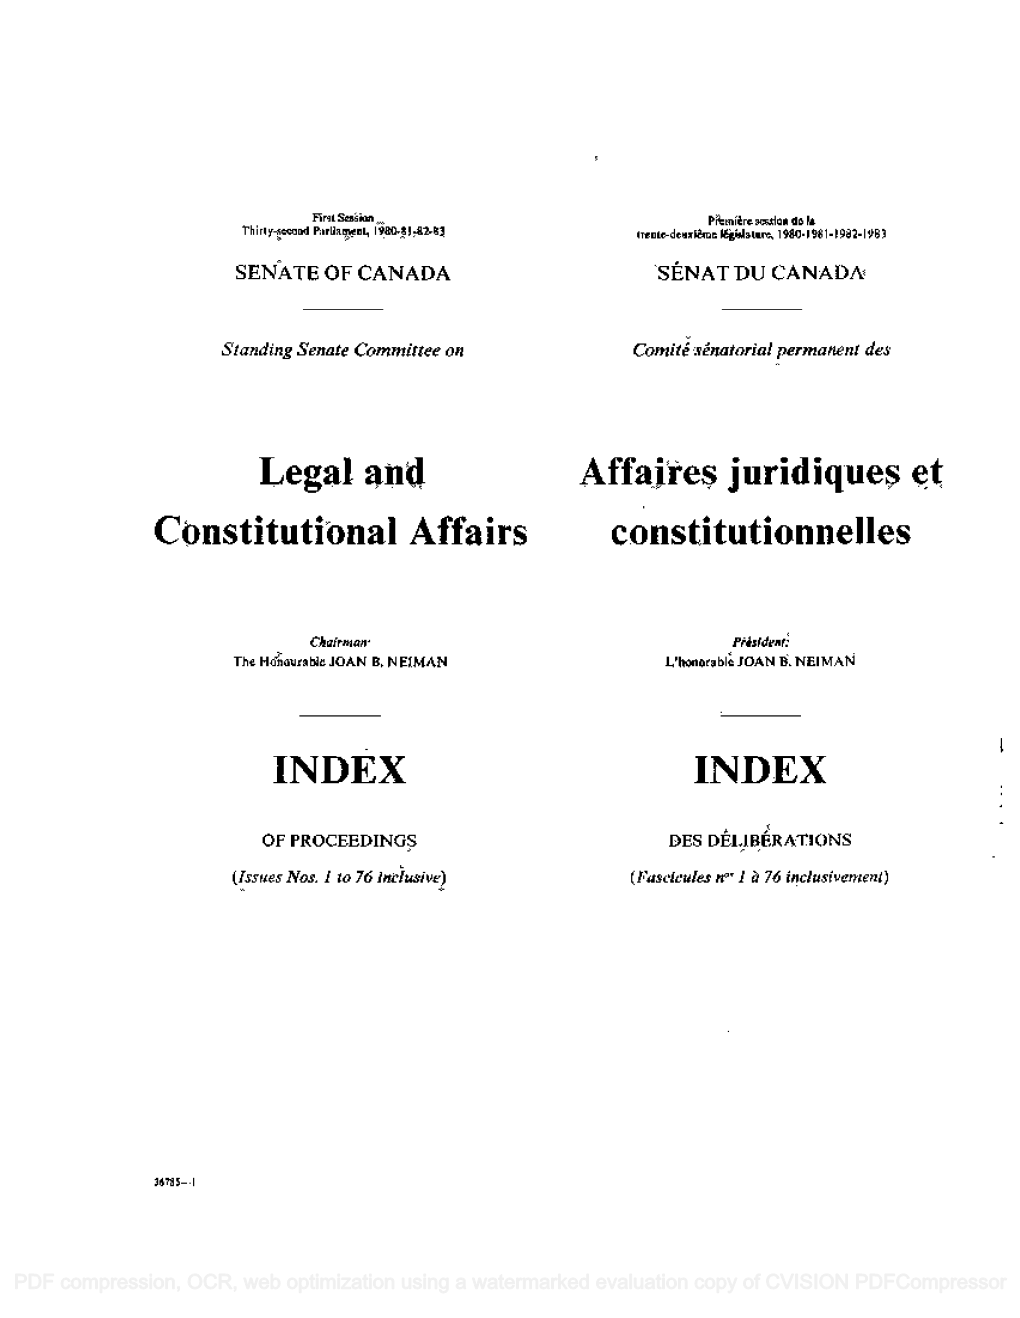 Affaires Juridiques Et Constitutional Affairs Constitutionnelles INDEX